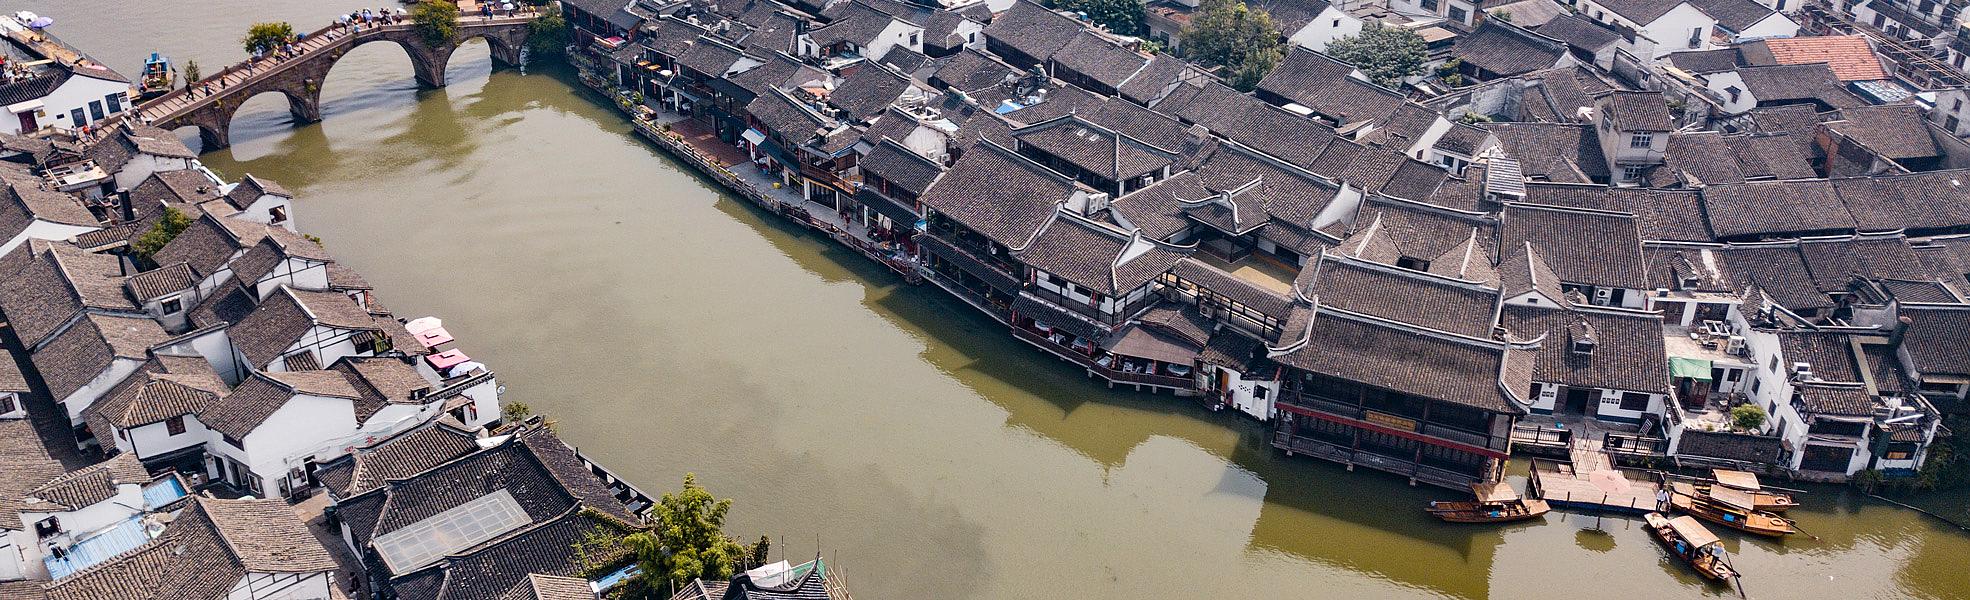 Zhujiajiao Town